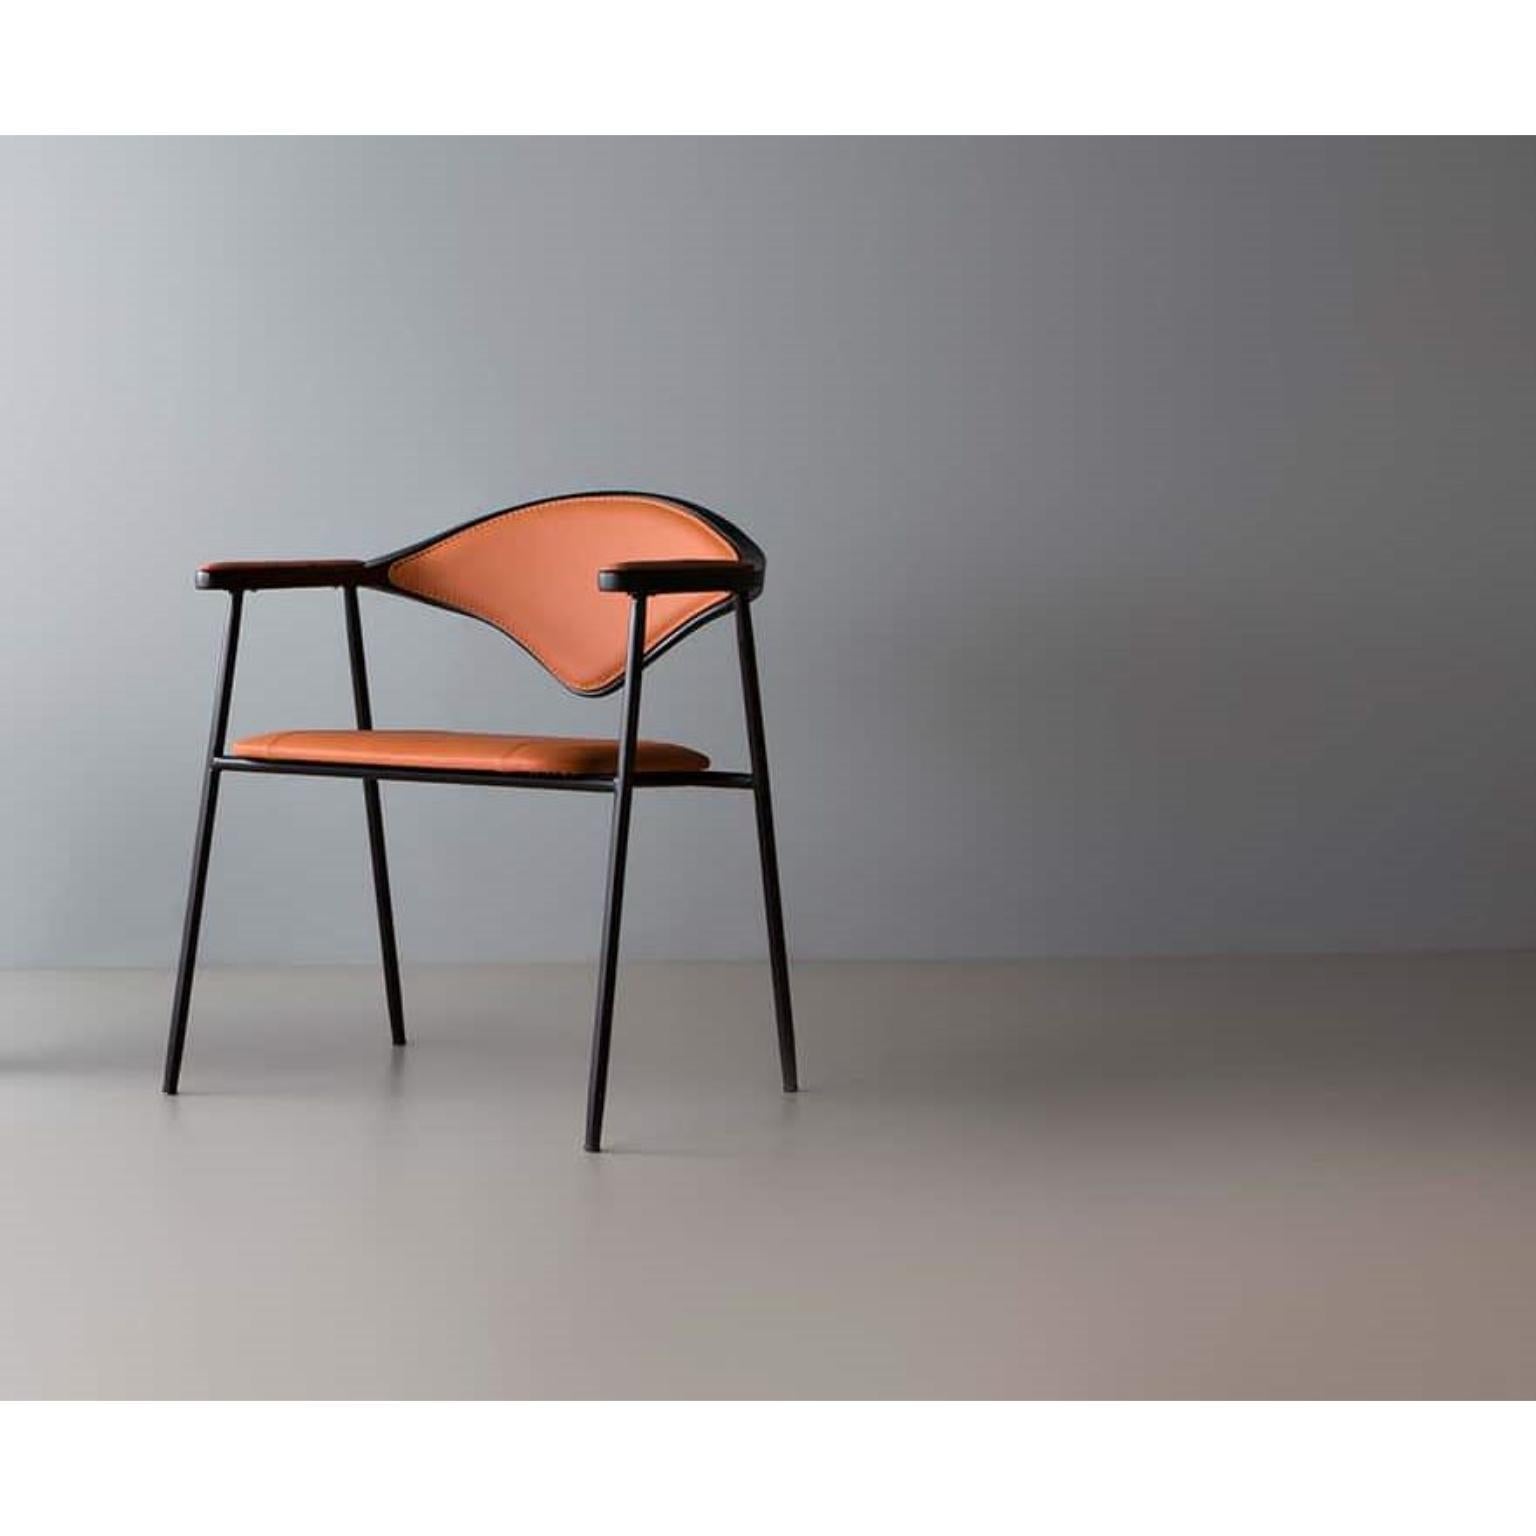 Dhira-Stuhl von Doimo Brasil
Abmessungen: B 63 x T 60 x H 74 cm 
MATERIALIEN: Metall und Fiberglas Stuhl mit gepolstertem Sitz...


Mit der Absicht, guten Geschmack und Persönlichkeit zu vermitteln, entschlüsselt Doimo Trends und folgt der